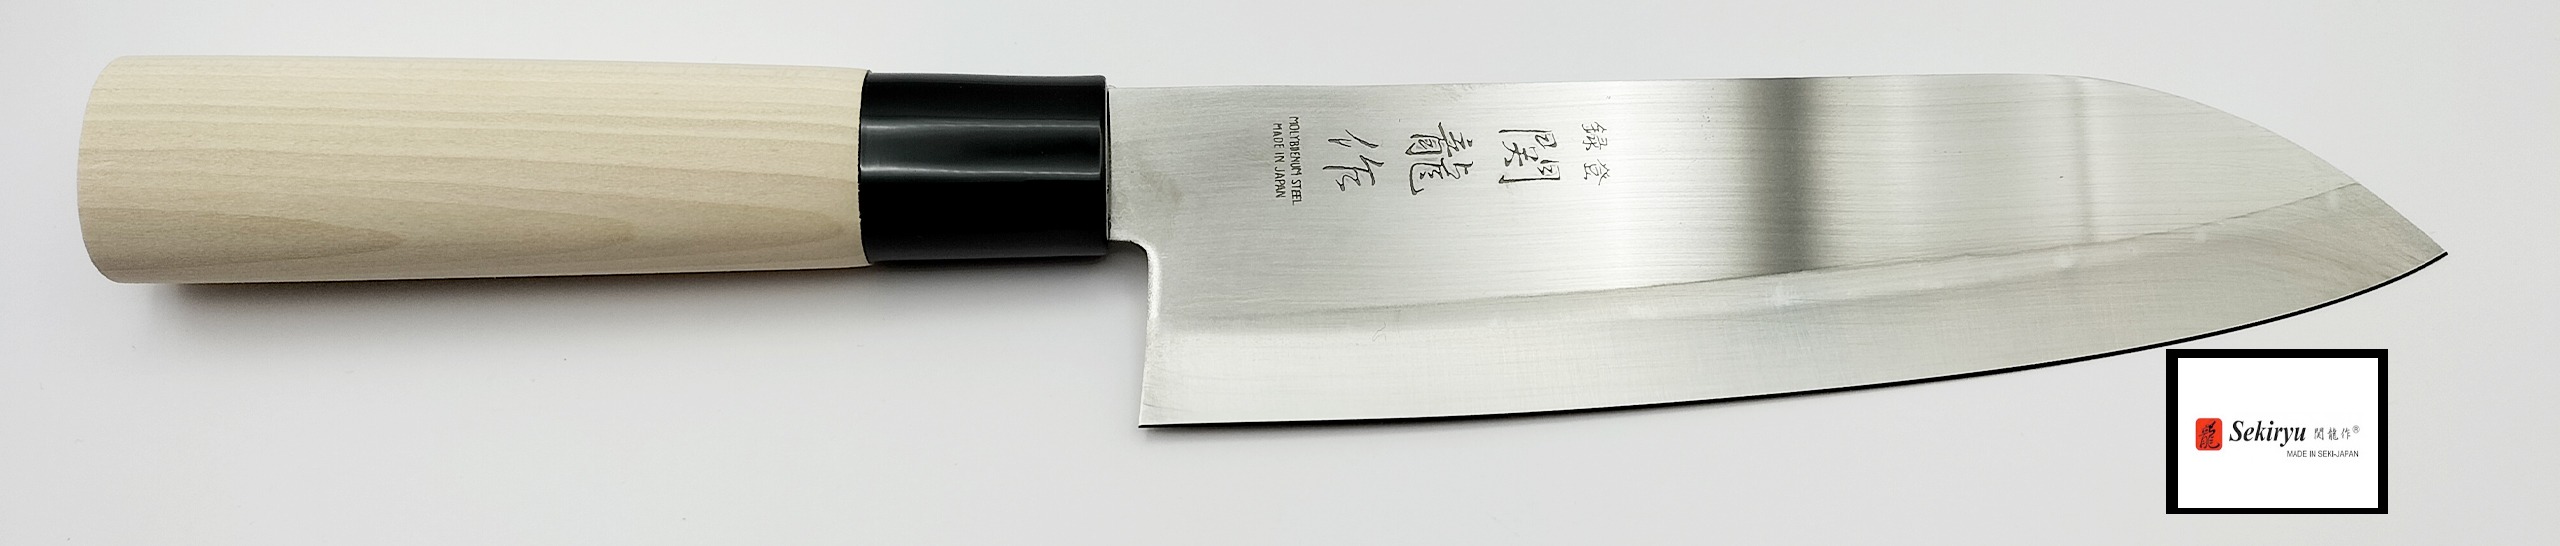 couteau japonais seki ryu couteau